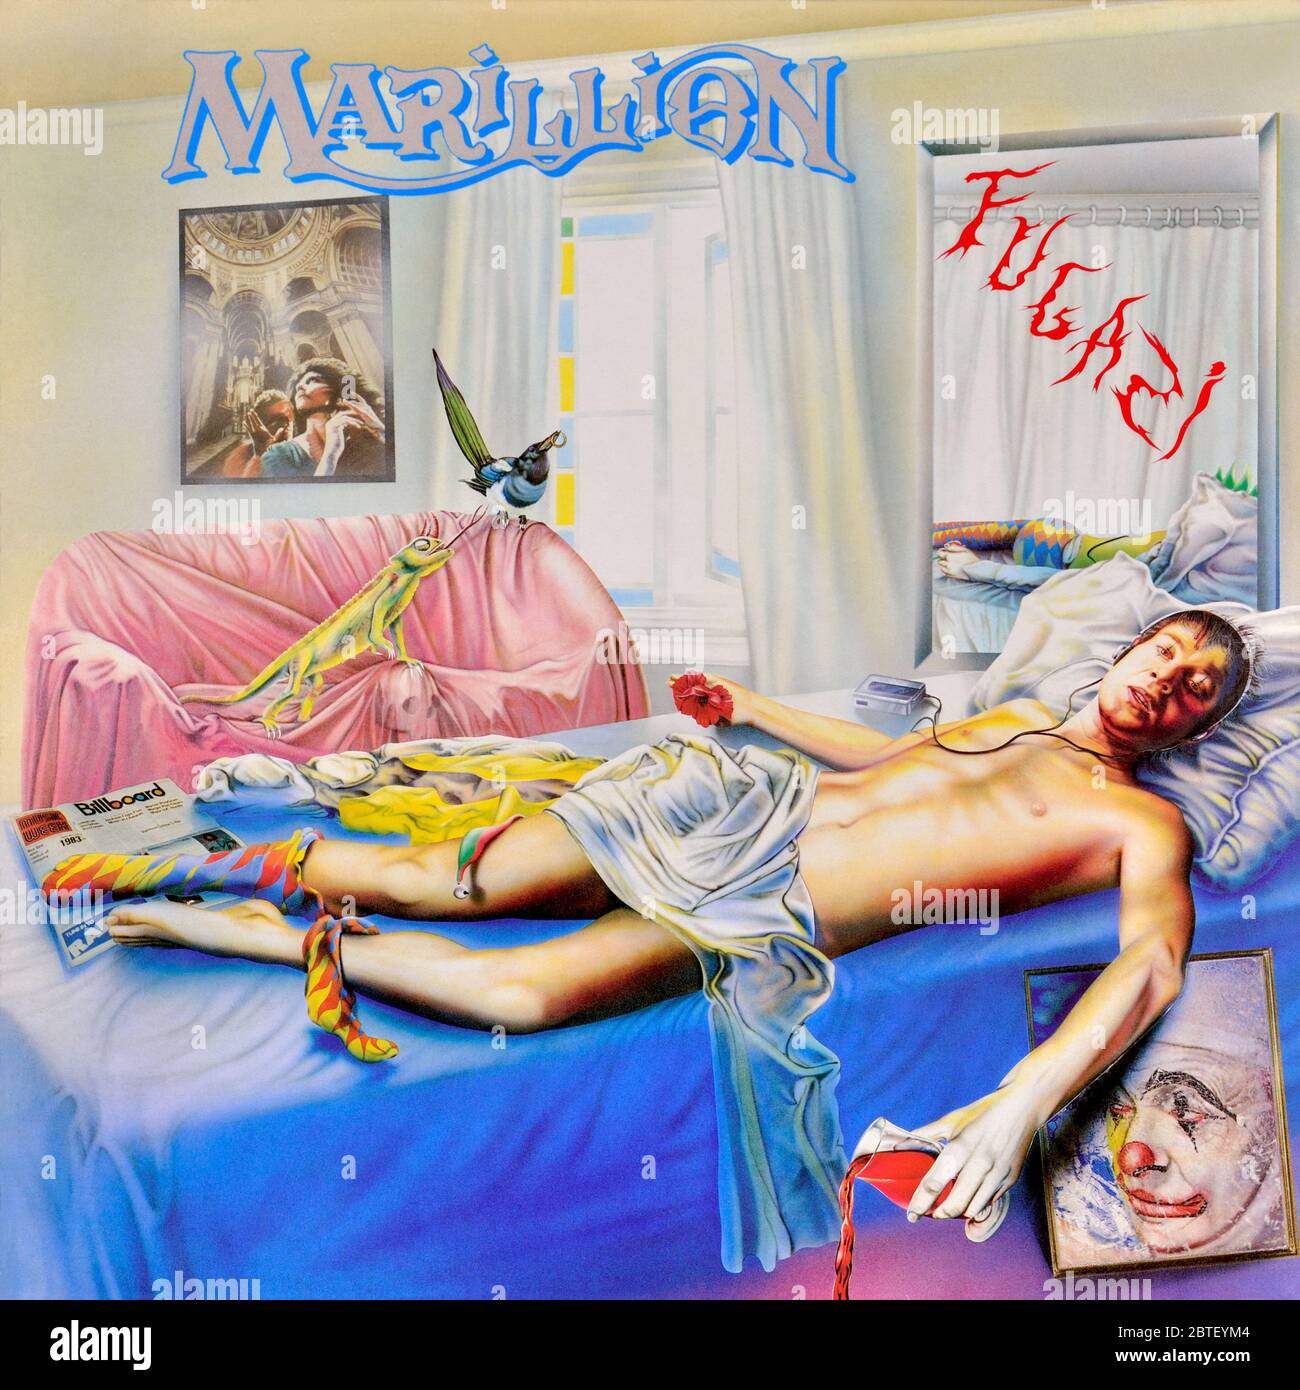 Marillion - original vinyl album cover - Fugazi - 1984 Stock Photo